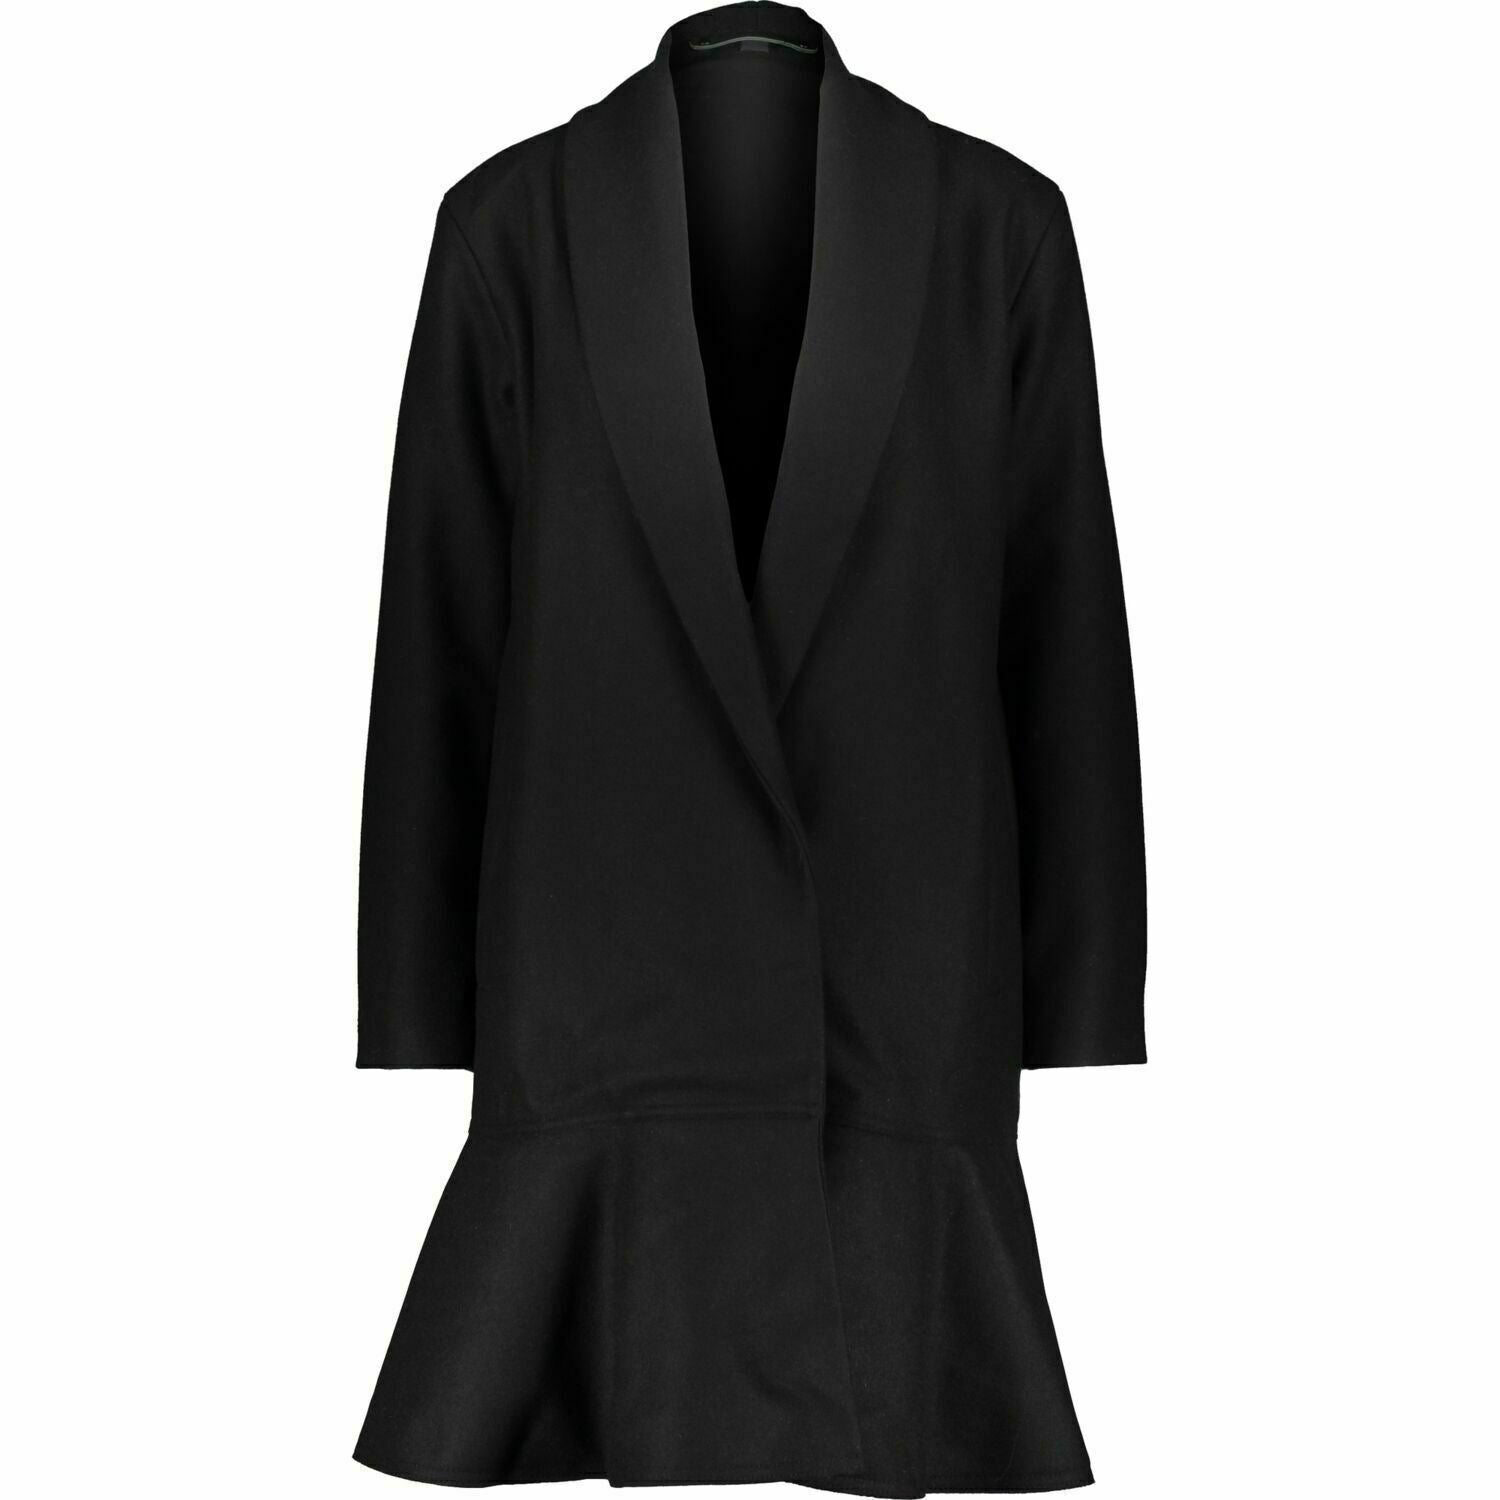 ALLSAINTS Womenâs GRACE Black Wool Blend Ruffled Hem Coat, size S